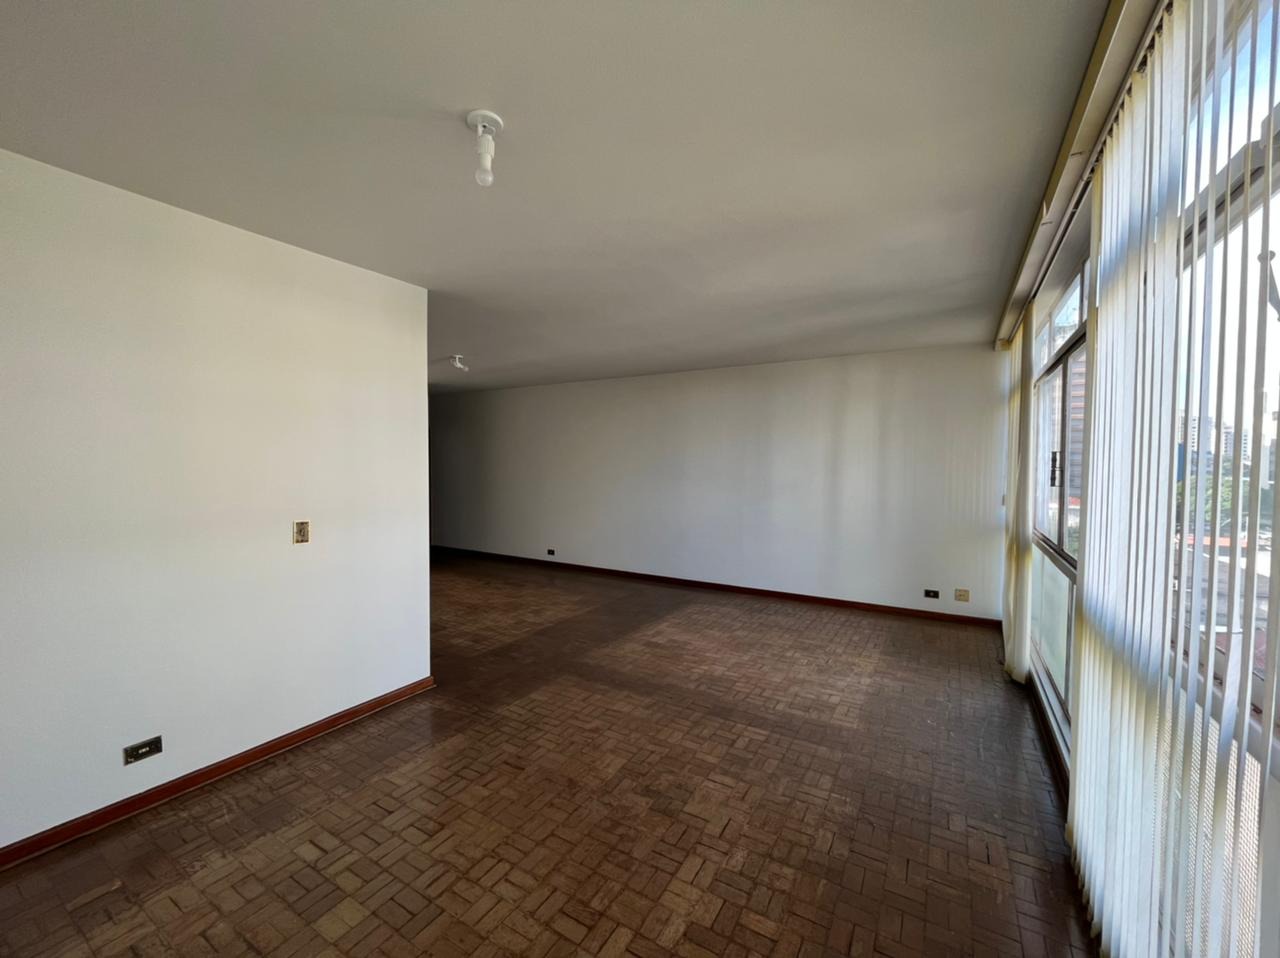 Apartamento à venda, 3 quartos, 1 vaga, no bairro Centro em Piracicaba - SP